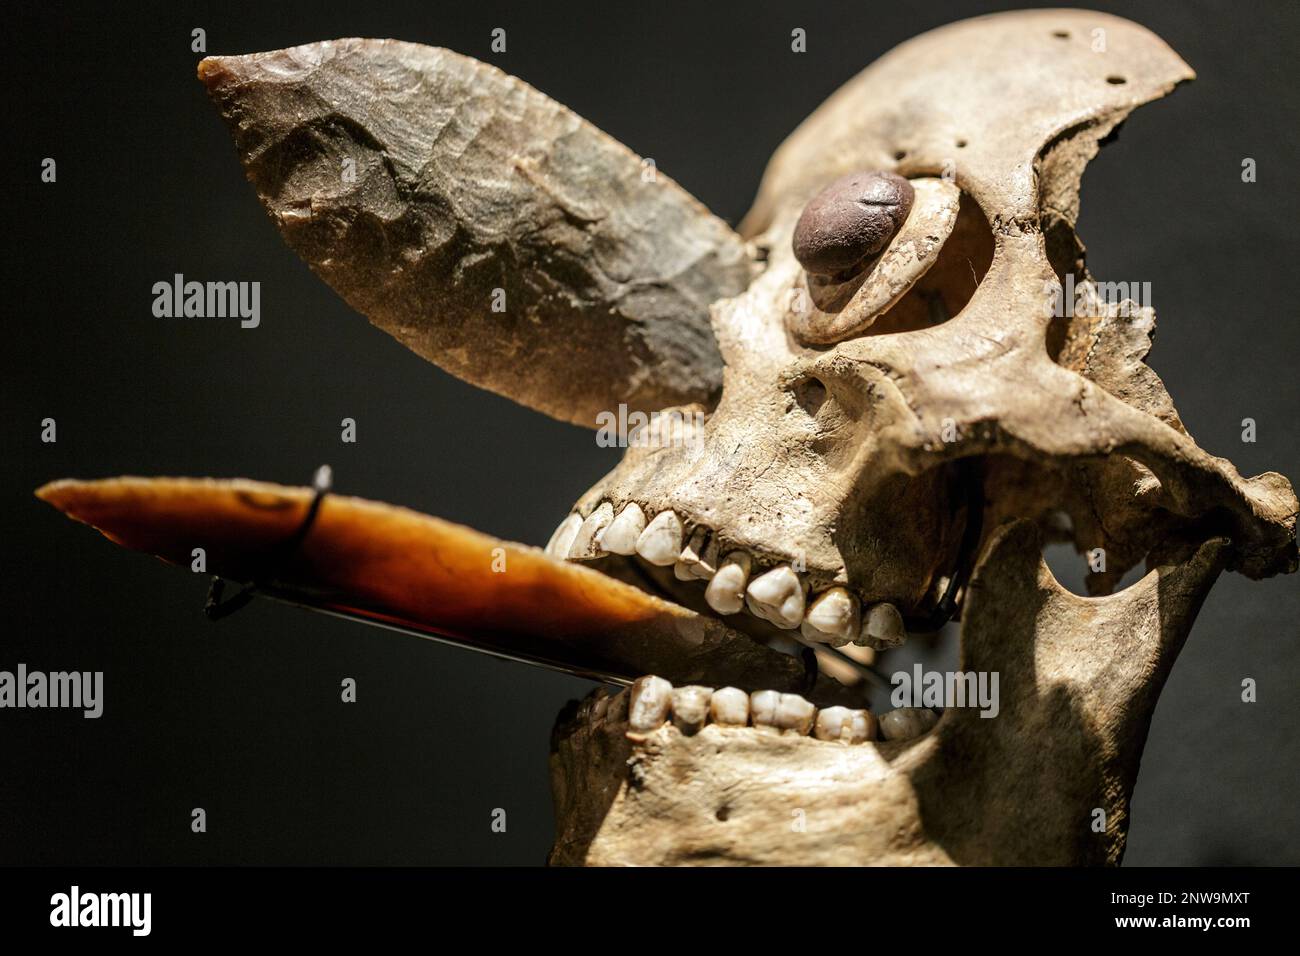 01/03/2020 maschera ornamentale del cranio Mexica incrostata nel naso e nella bocca con lame di ossidiana come quelle usate nei sacrifici umani. Rituali mesoamericani Foto Stock